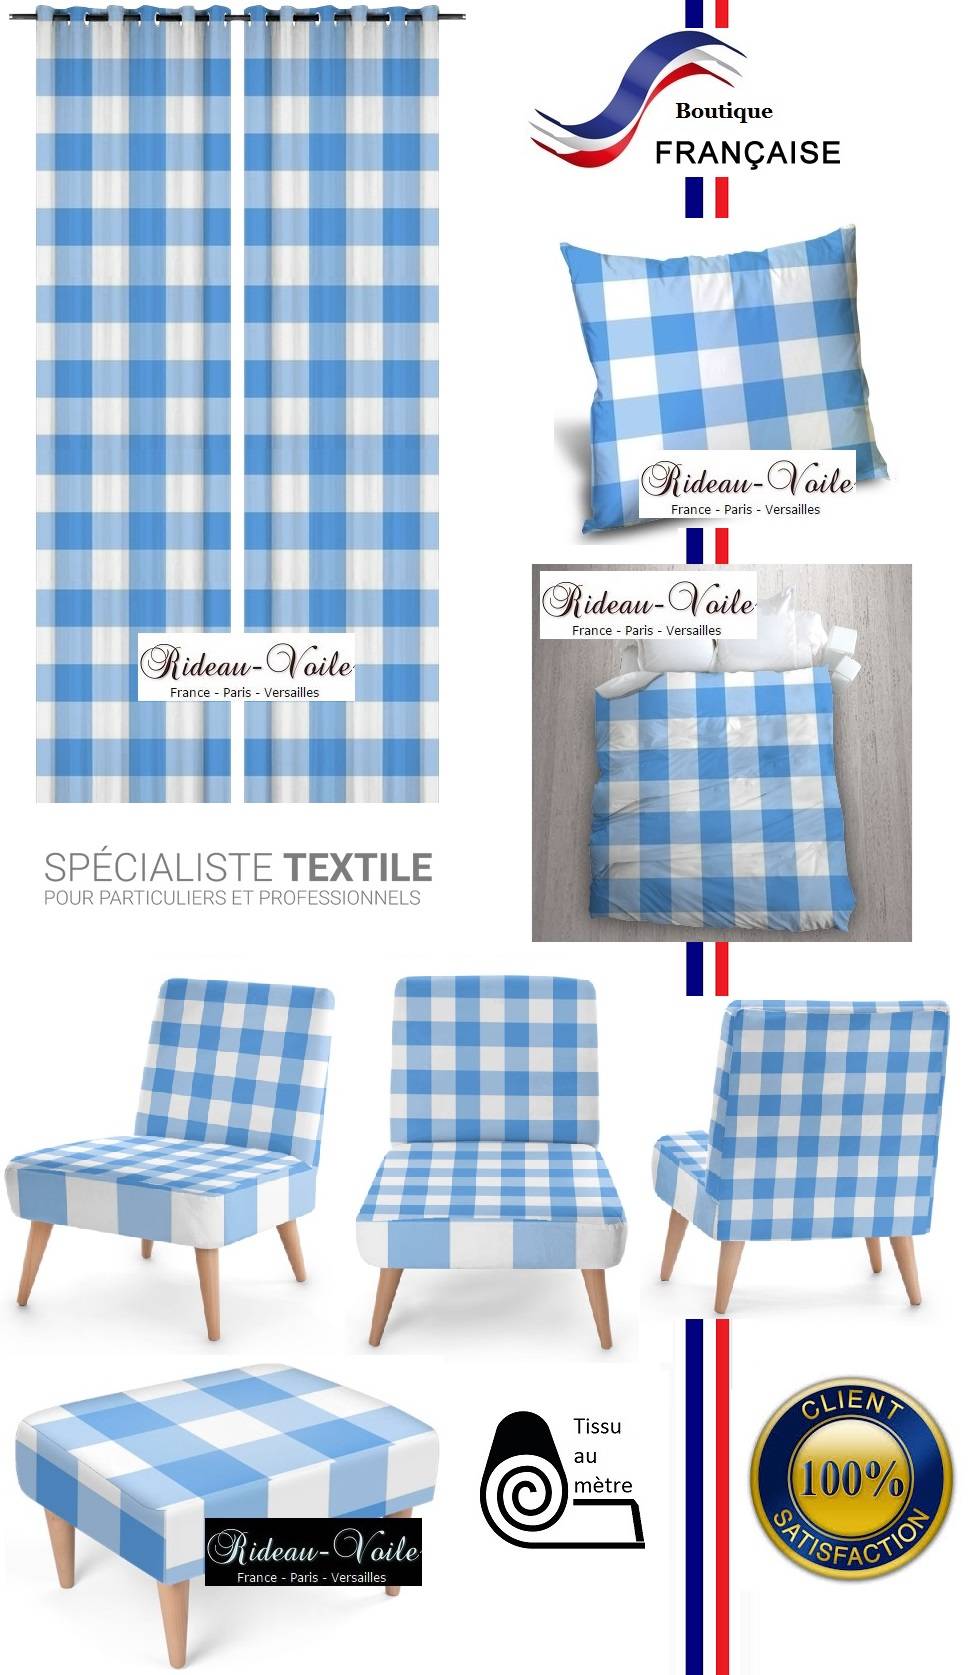 tissu textile ameublement fauteuil ignifugé non feu M1 siège carrés carreaux motif imprimé vichy bleu blanc rideau couette coussin siège au mètre haut gamme